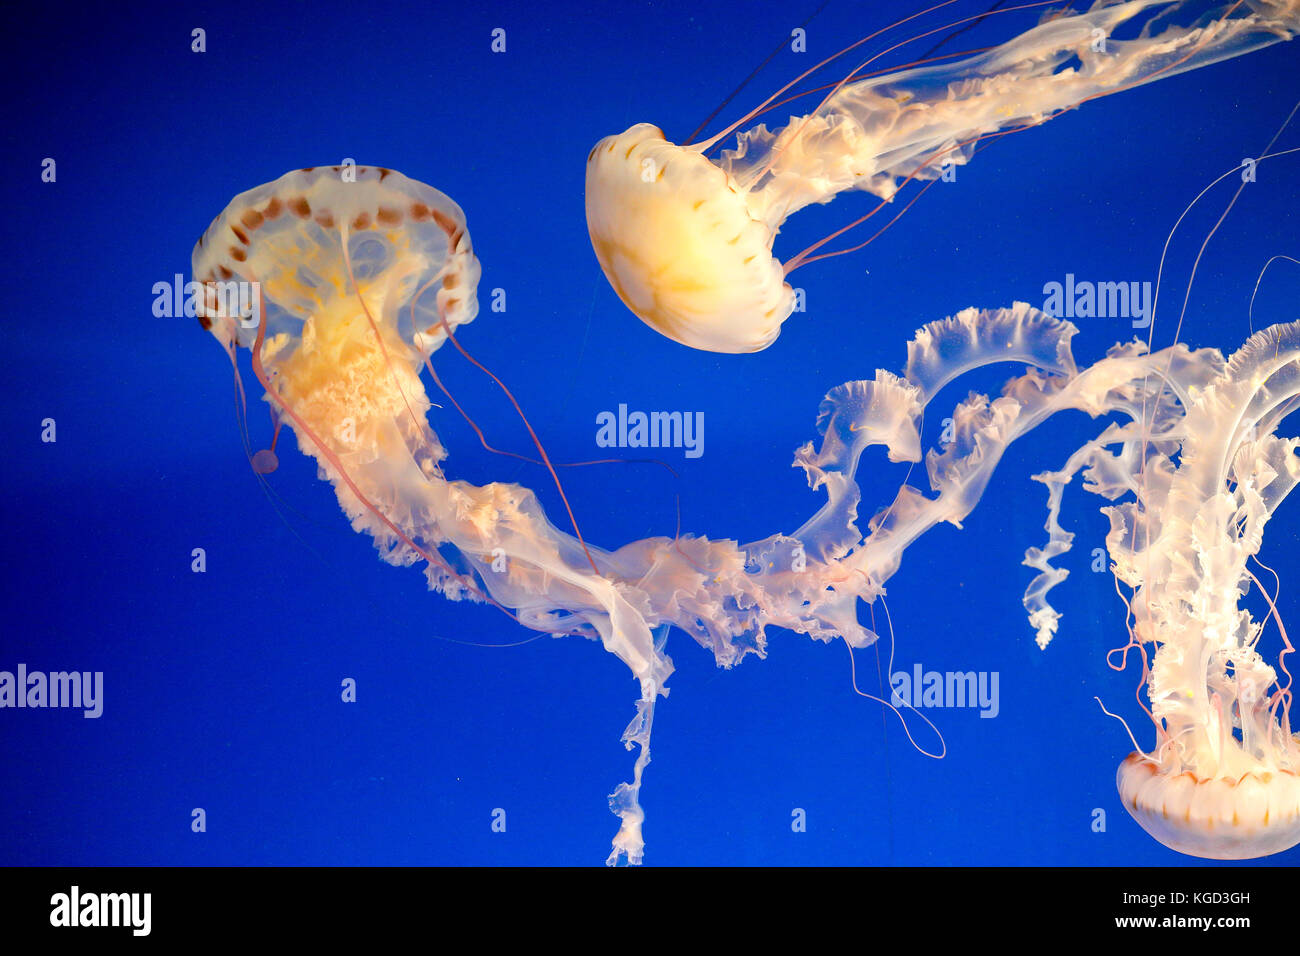 Des méduses dans un aquarium Banque D'Images